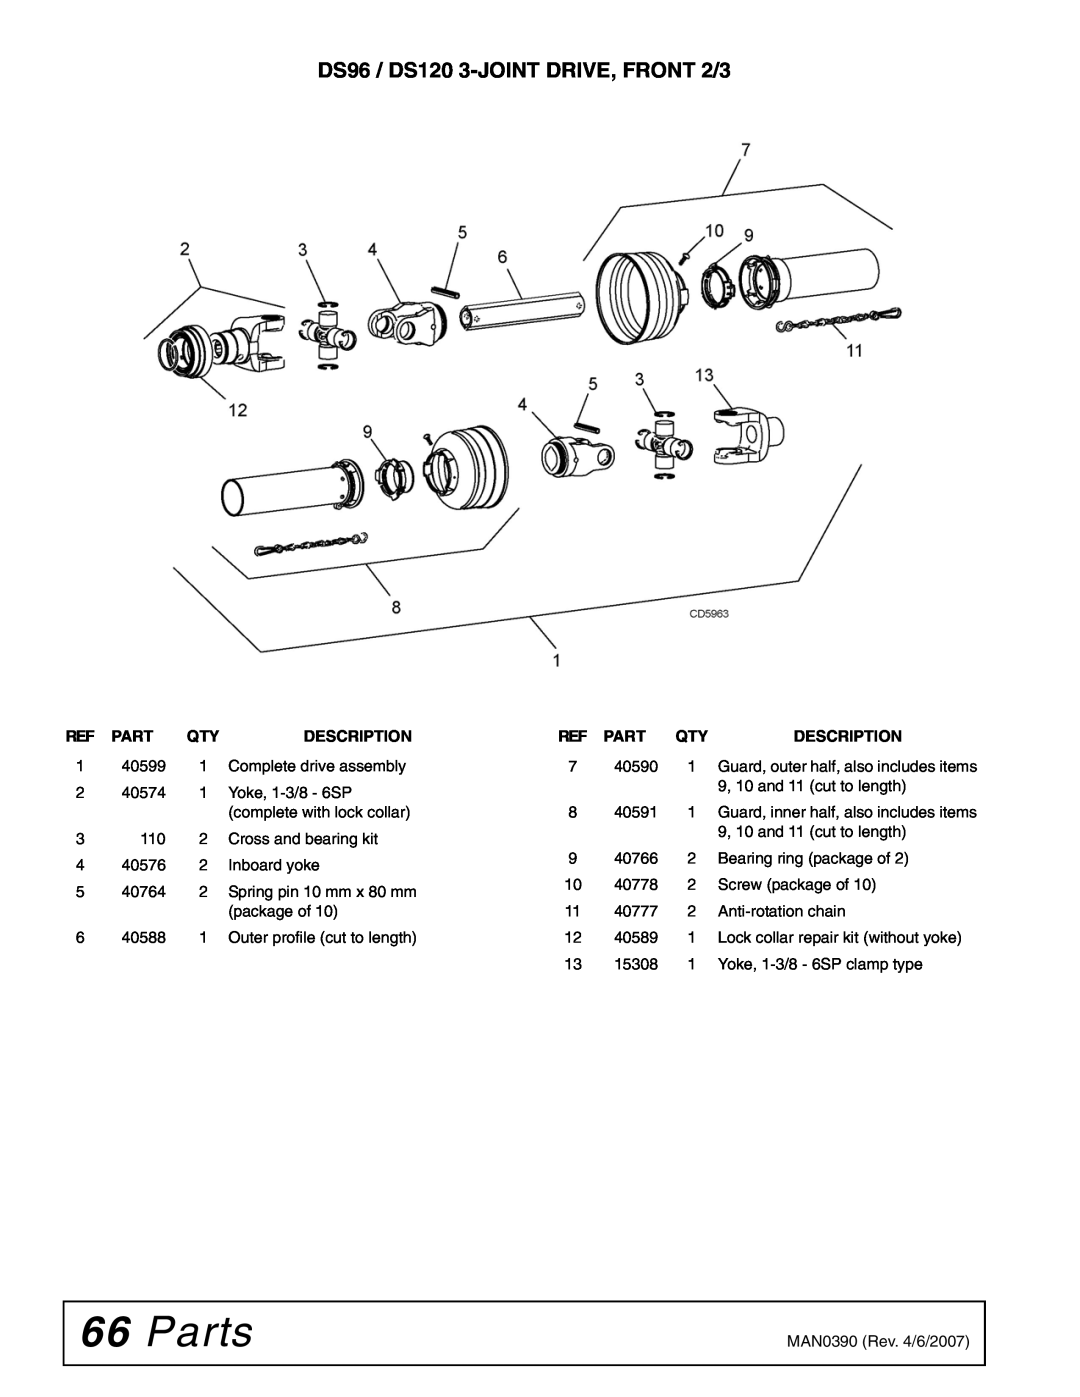 Woods Equipment manual Parts, DS96 / DS120 3-JOINT DRIVE, FRONT 2/3, Description 